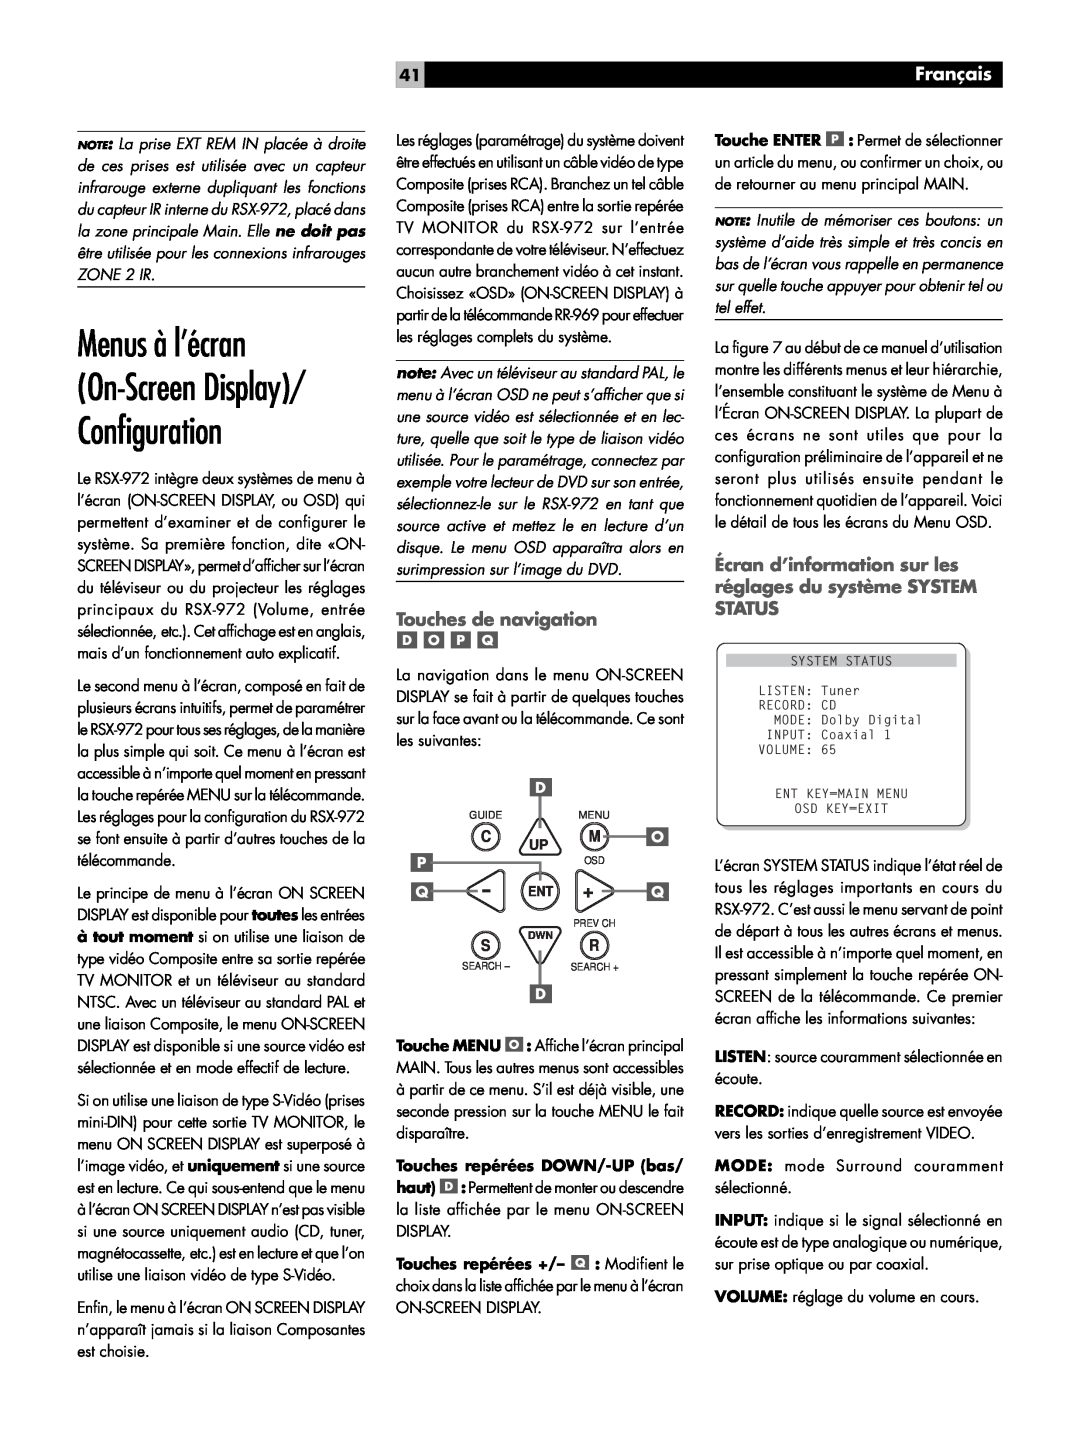 Rotel RSX-972 owner manual Menus à l’écran On-ScreenDisplay/ Configuration, Touches de navigation, Français 